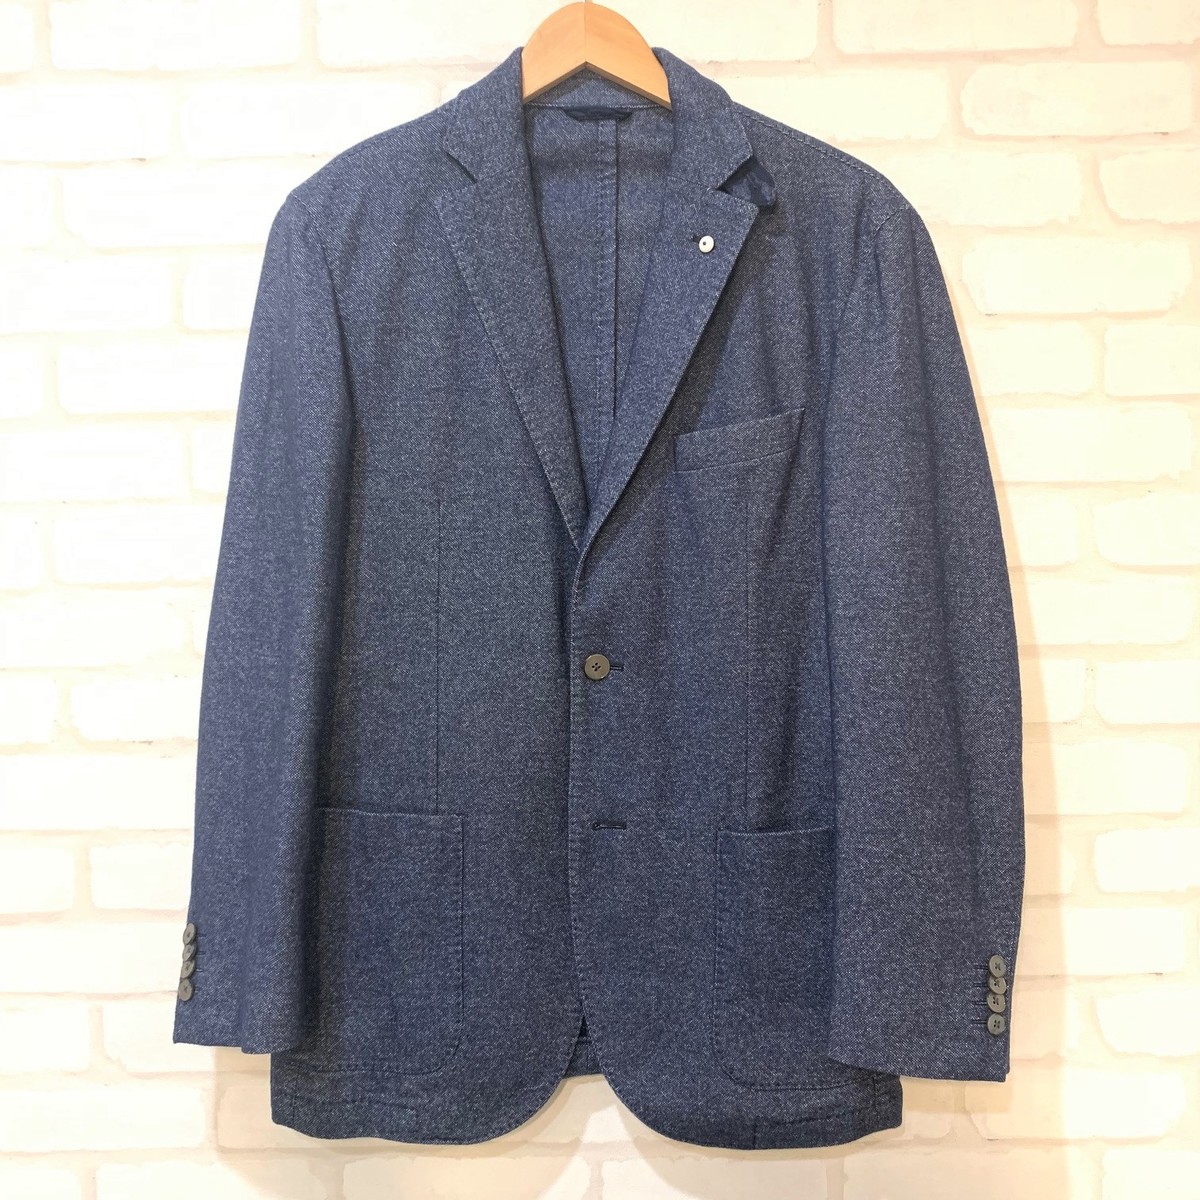 エコスタイル新宿南口店にてL.B.M1911のコットン×ウール ジャケットを買取致しました。 買取価格・実績 2019年9月26日公開情報